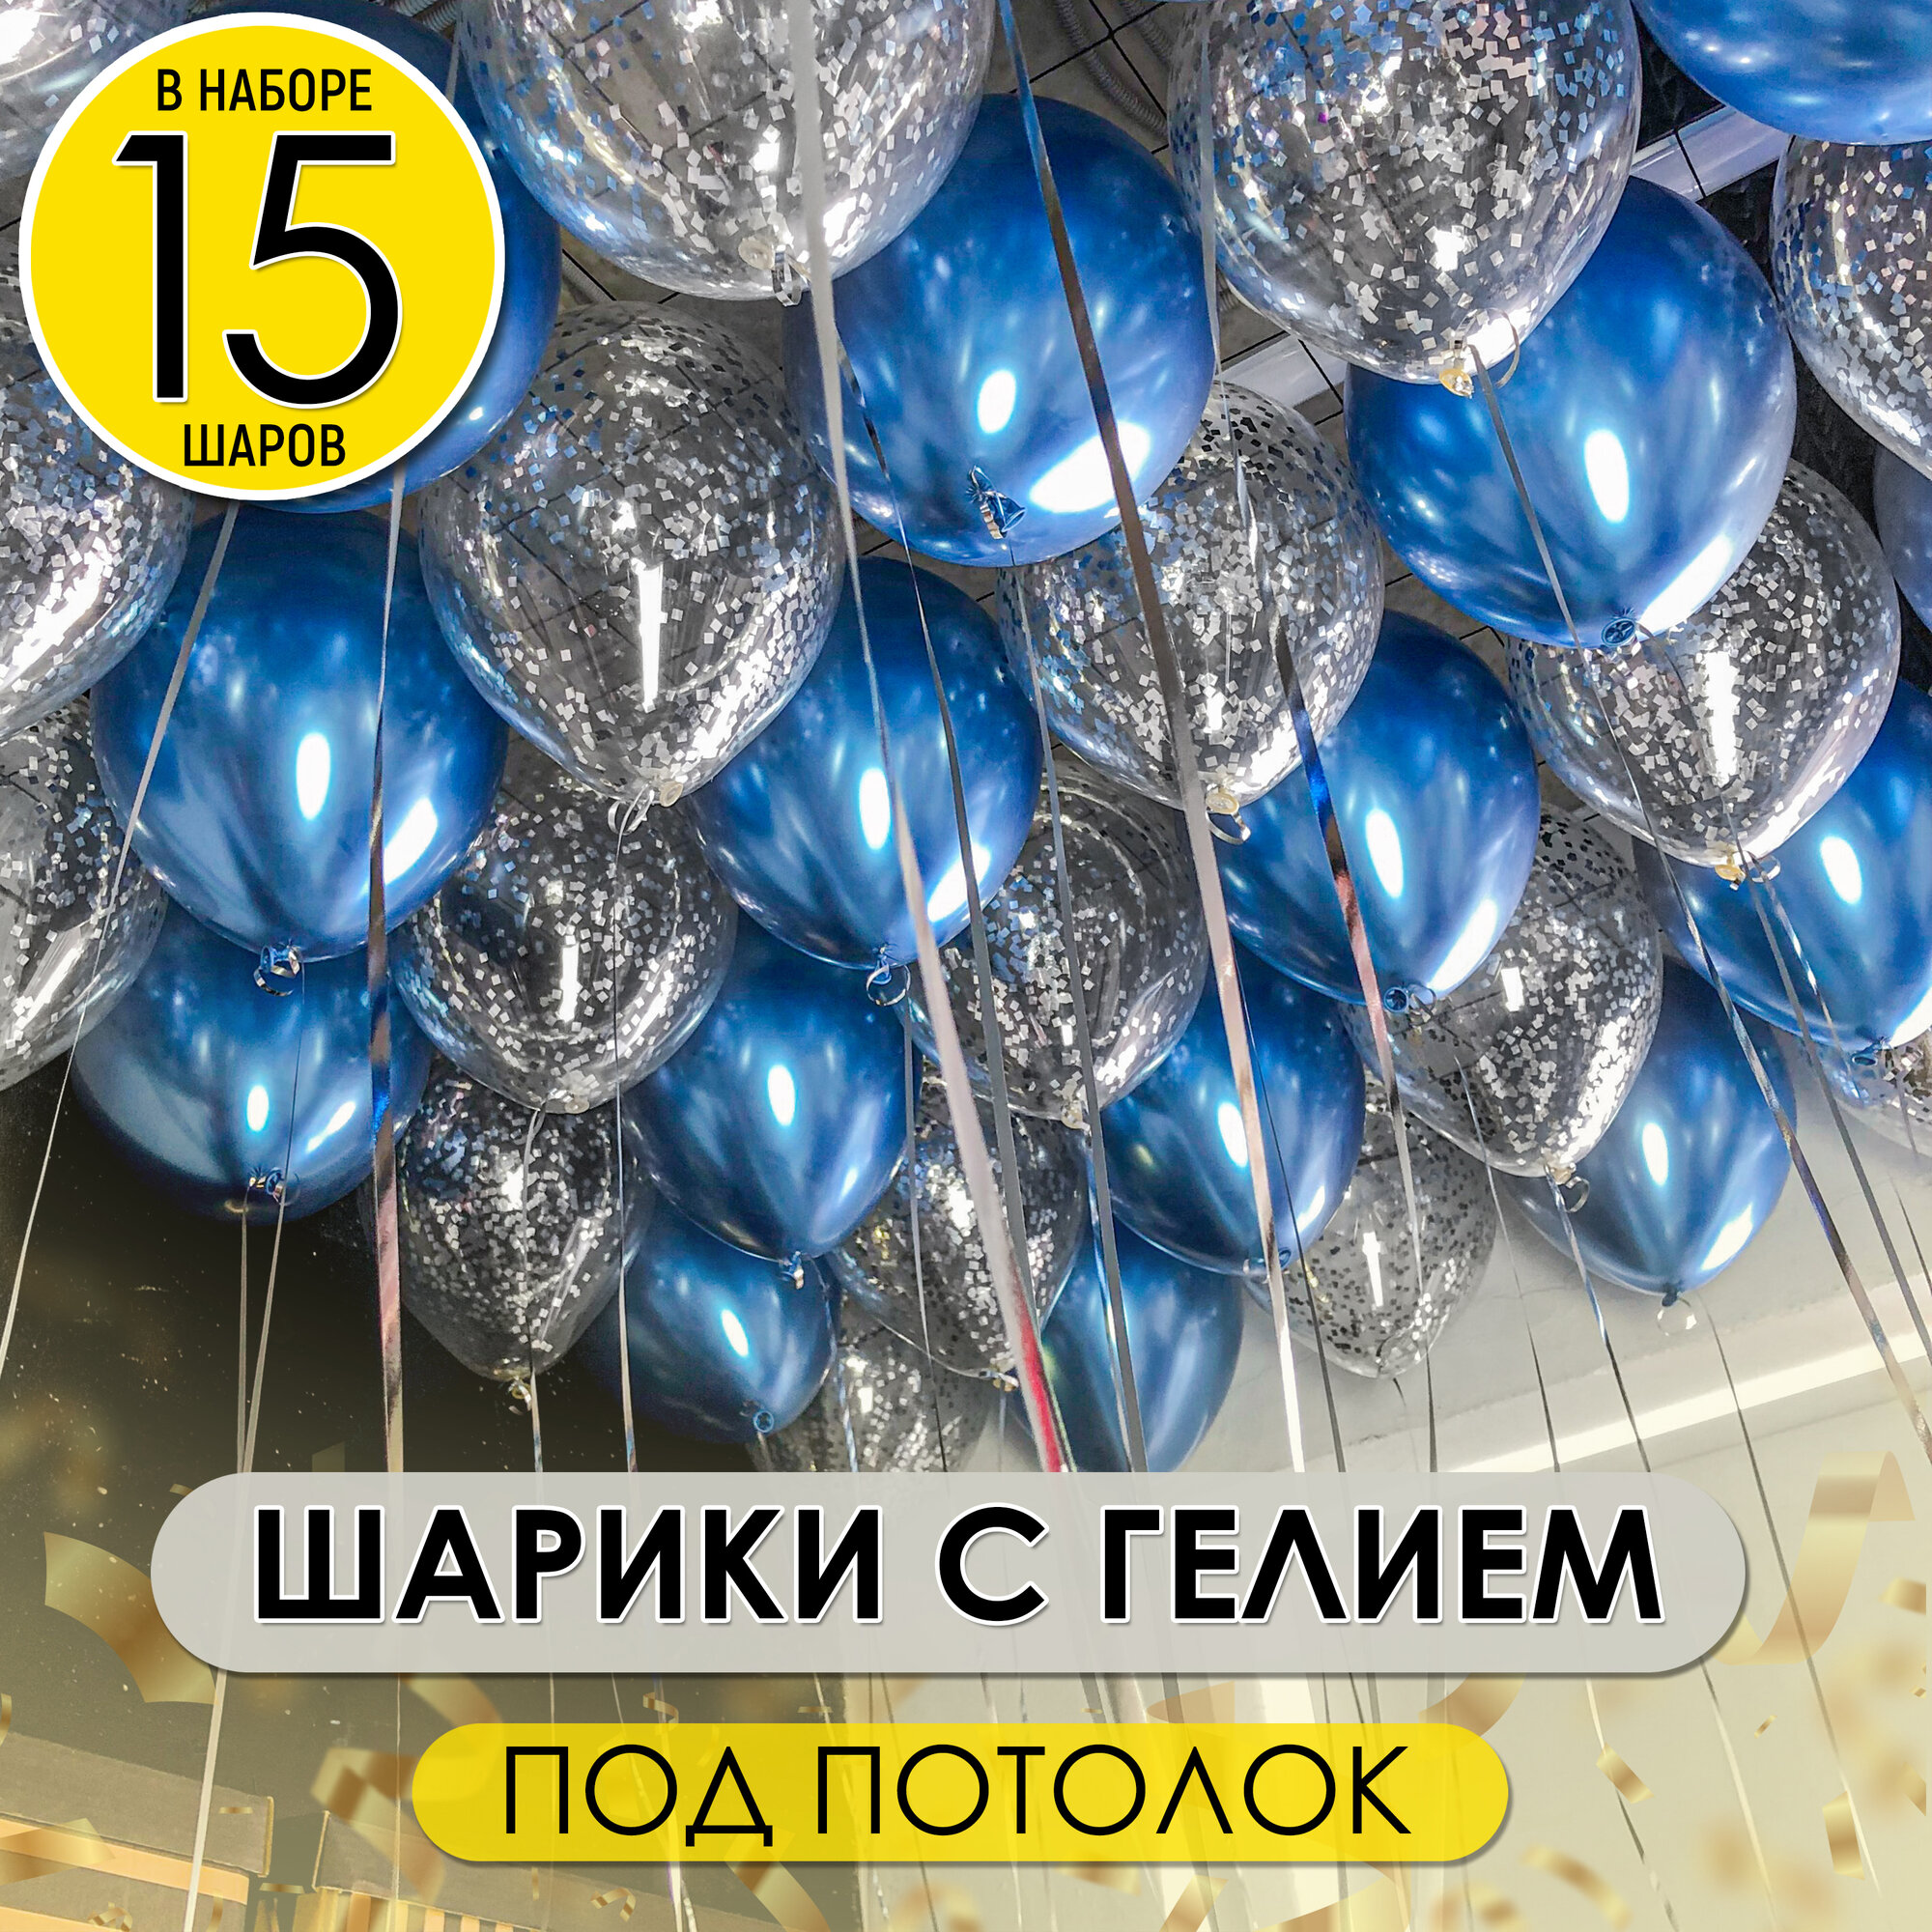 Воздушные шары надутые с гелием под потолок синие и с конфетти, 15 шт.